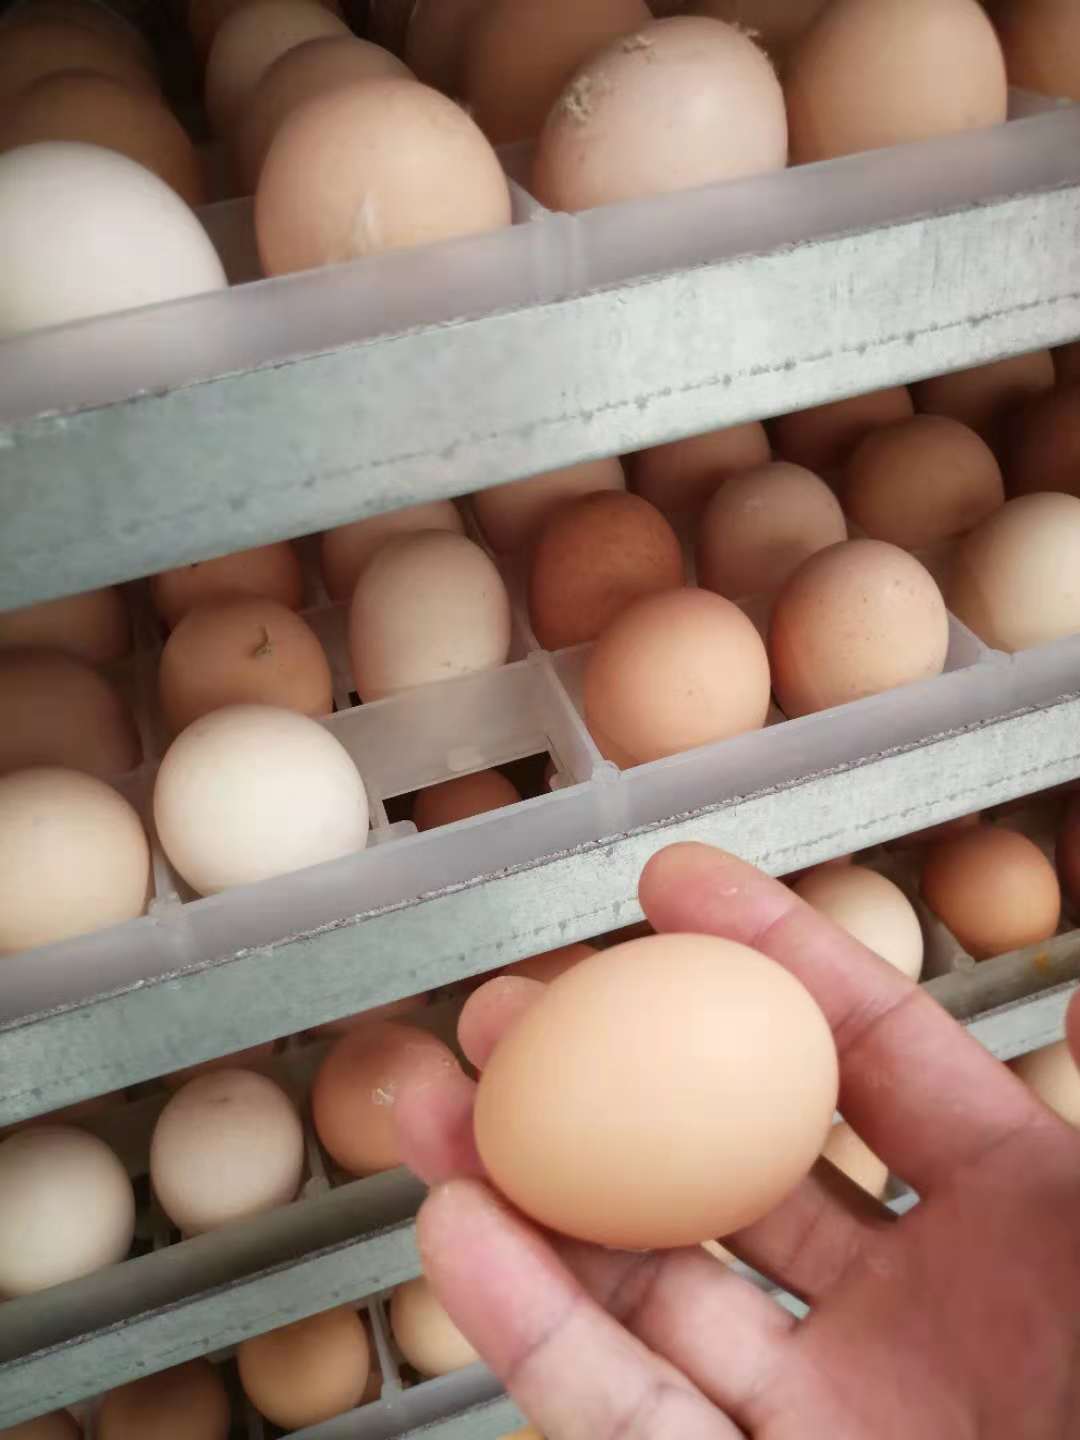 种蛋种蛋 皖南种蛋厂家 皖南种鸡蛋报价 皖南种鸡蛋 皖南土鸡蛋批发 皖南土鸡蛋供应商 皖南种蛋直销 皖南种蛋价格 种蛋供应商